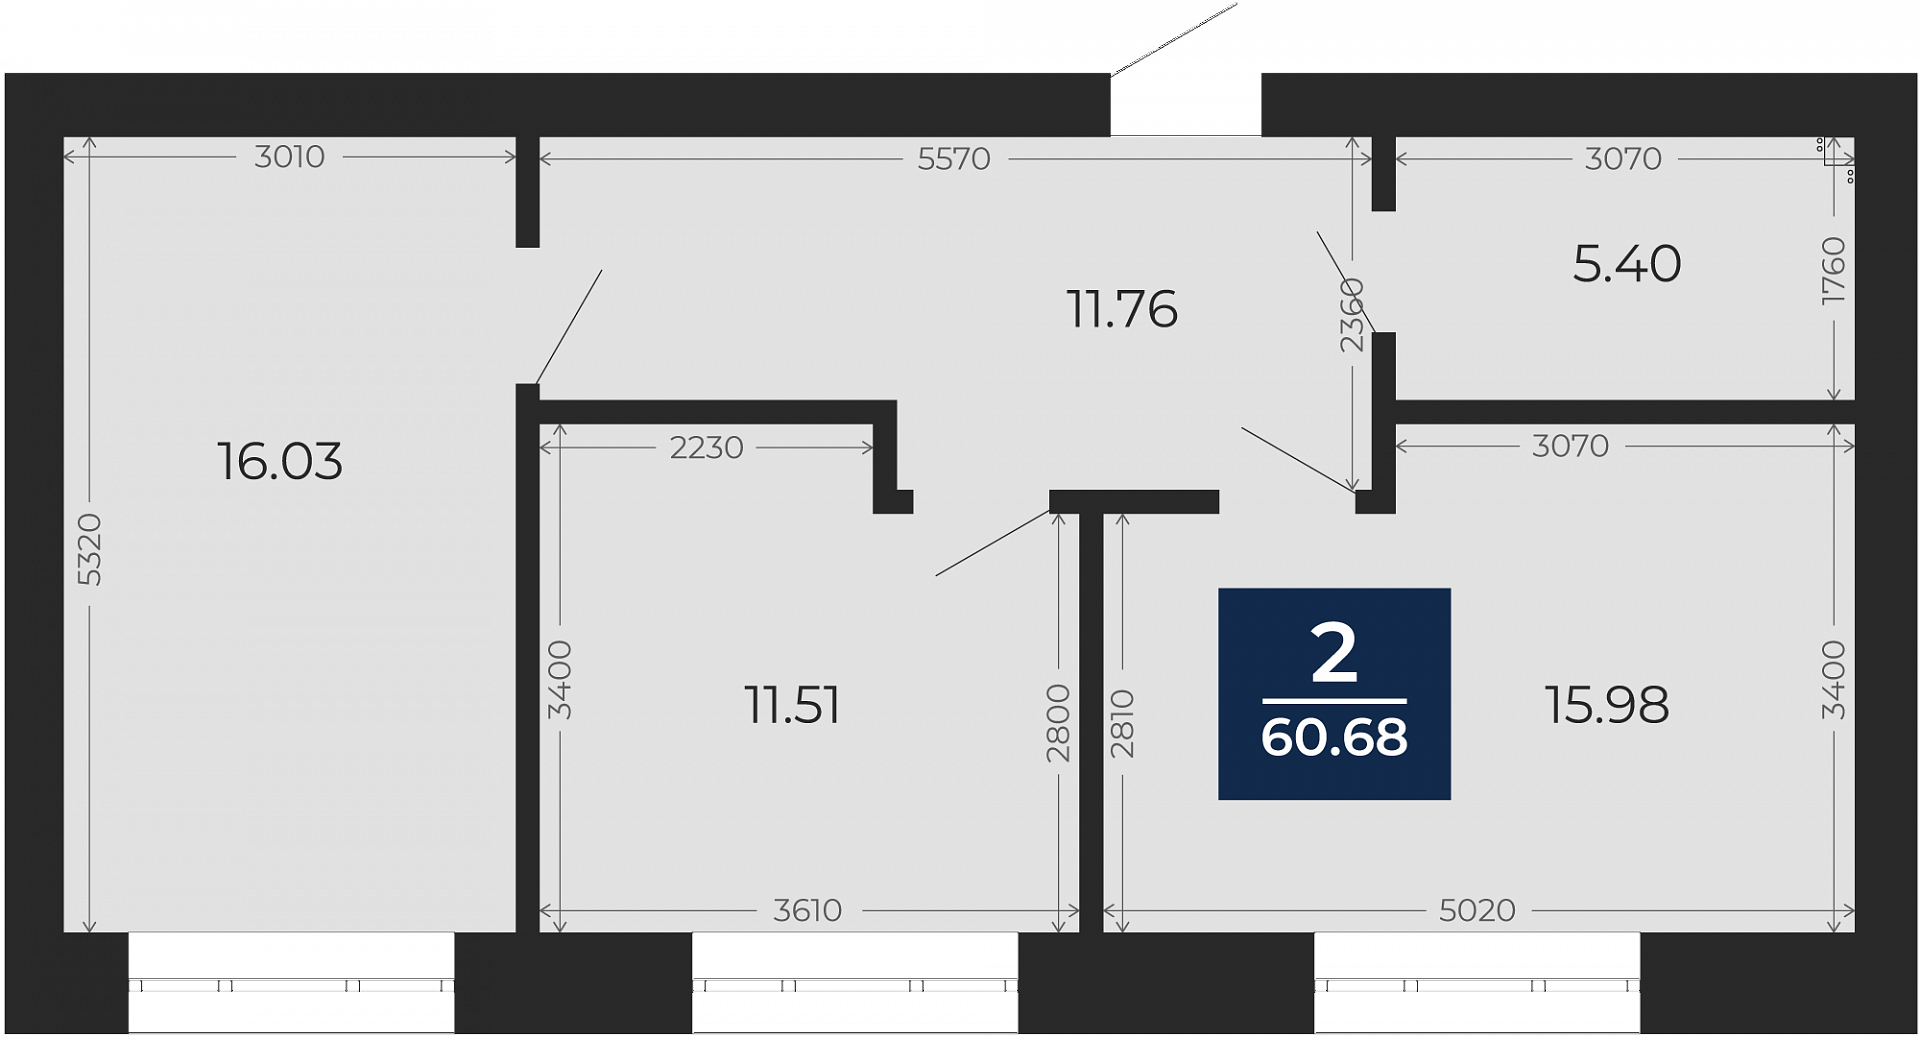 Квартира № 1, 2-комнатная, 60.68 кв. м, 2 этаж